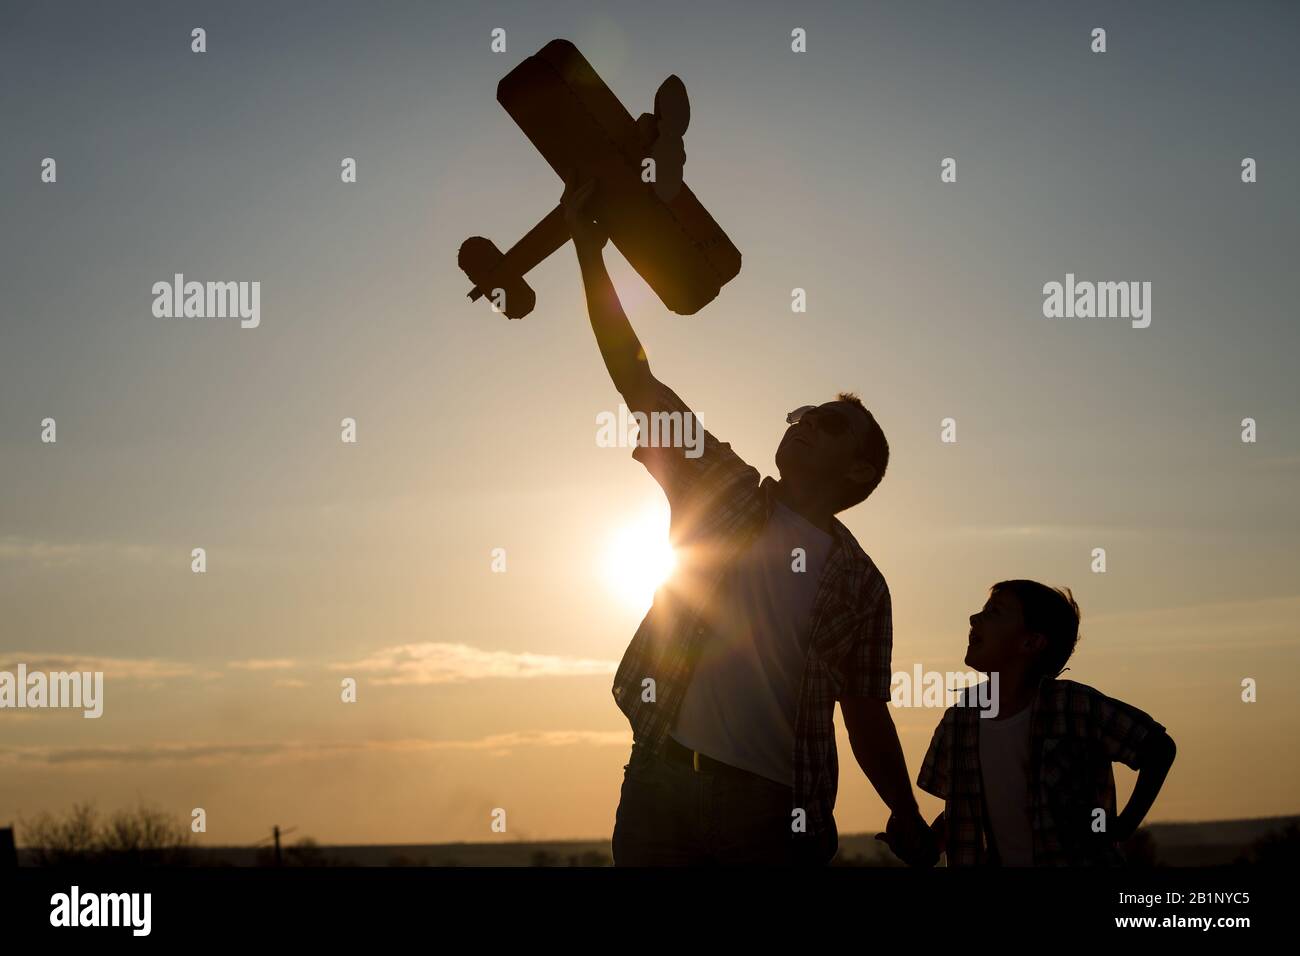 Vater und Sohn spielen mit Pappe Spielzeugflugzeug im Park bei Sonnenuntergang. Konzept der freundlichen Familie. Leute, die Spaß im Freien. Stockfoto